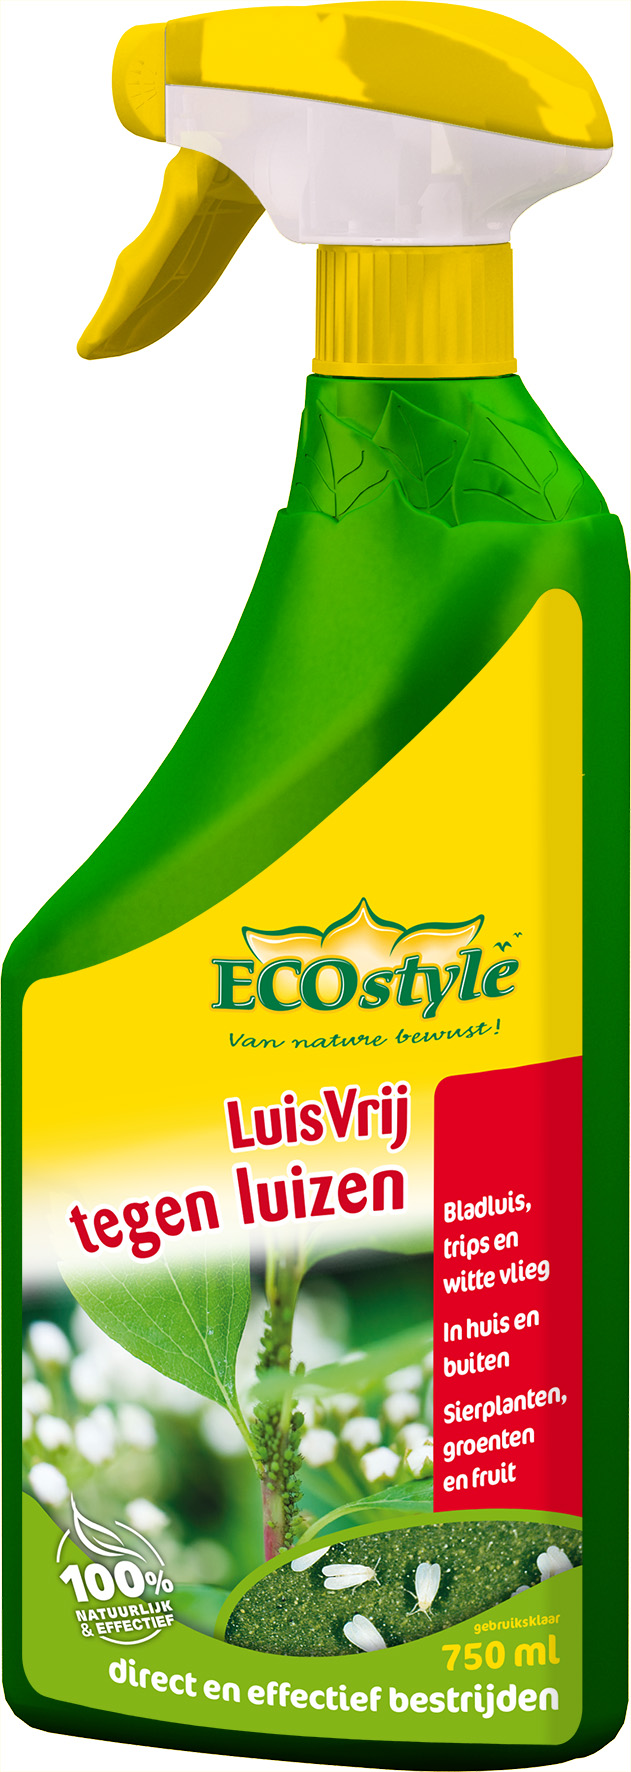 Afbeelding Ecostyle Luisvrij Gebruiksklaar - Gewasbescherming - 750 ml door Haxo.nl